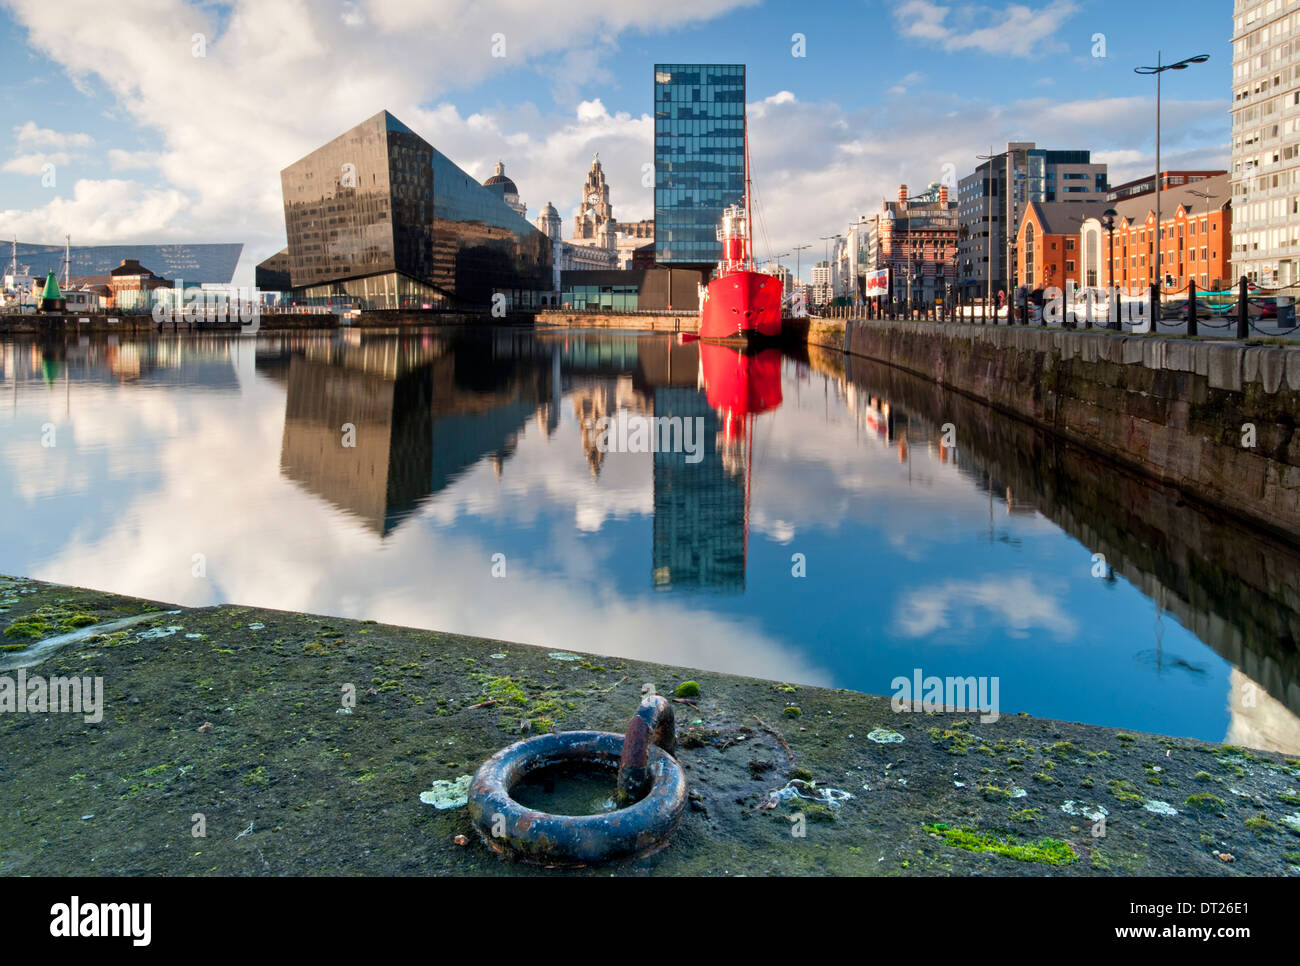 Apartamentos modernos, el Liver Building y Planet Bar más rosca Canning Dock, Liverpool, Merseyside, Inglaterra, Reino Unido. Foto de stock